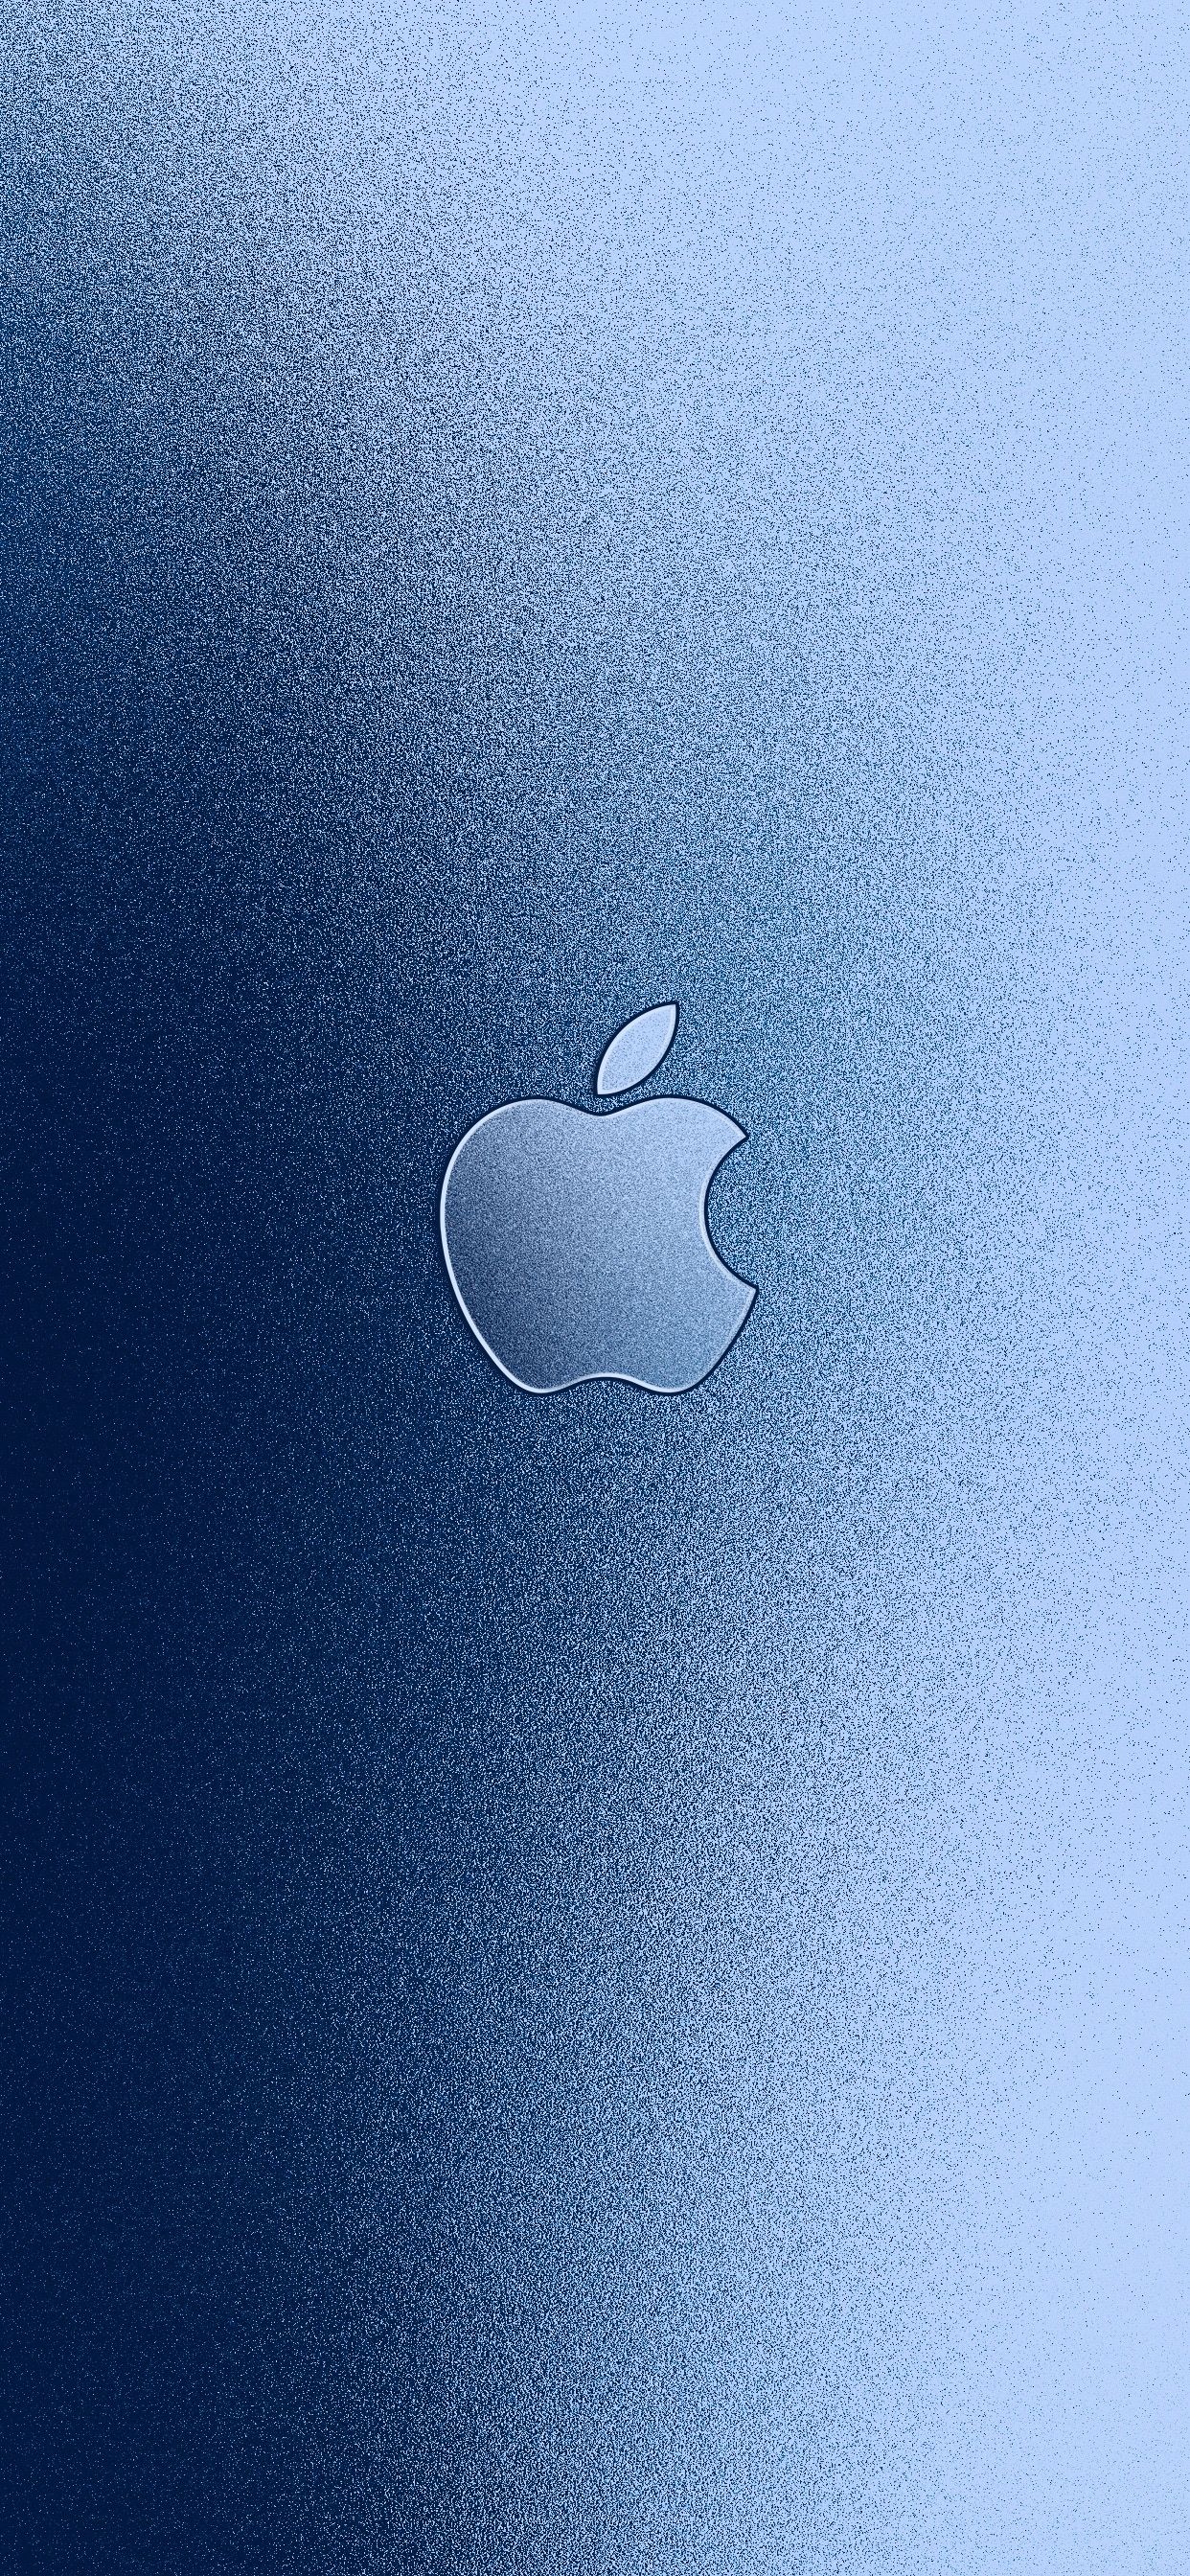 Fondos de aluminio con el logo de Apple para iPhone